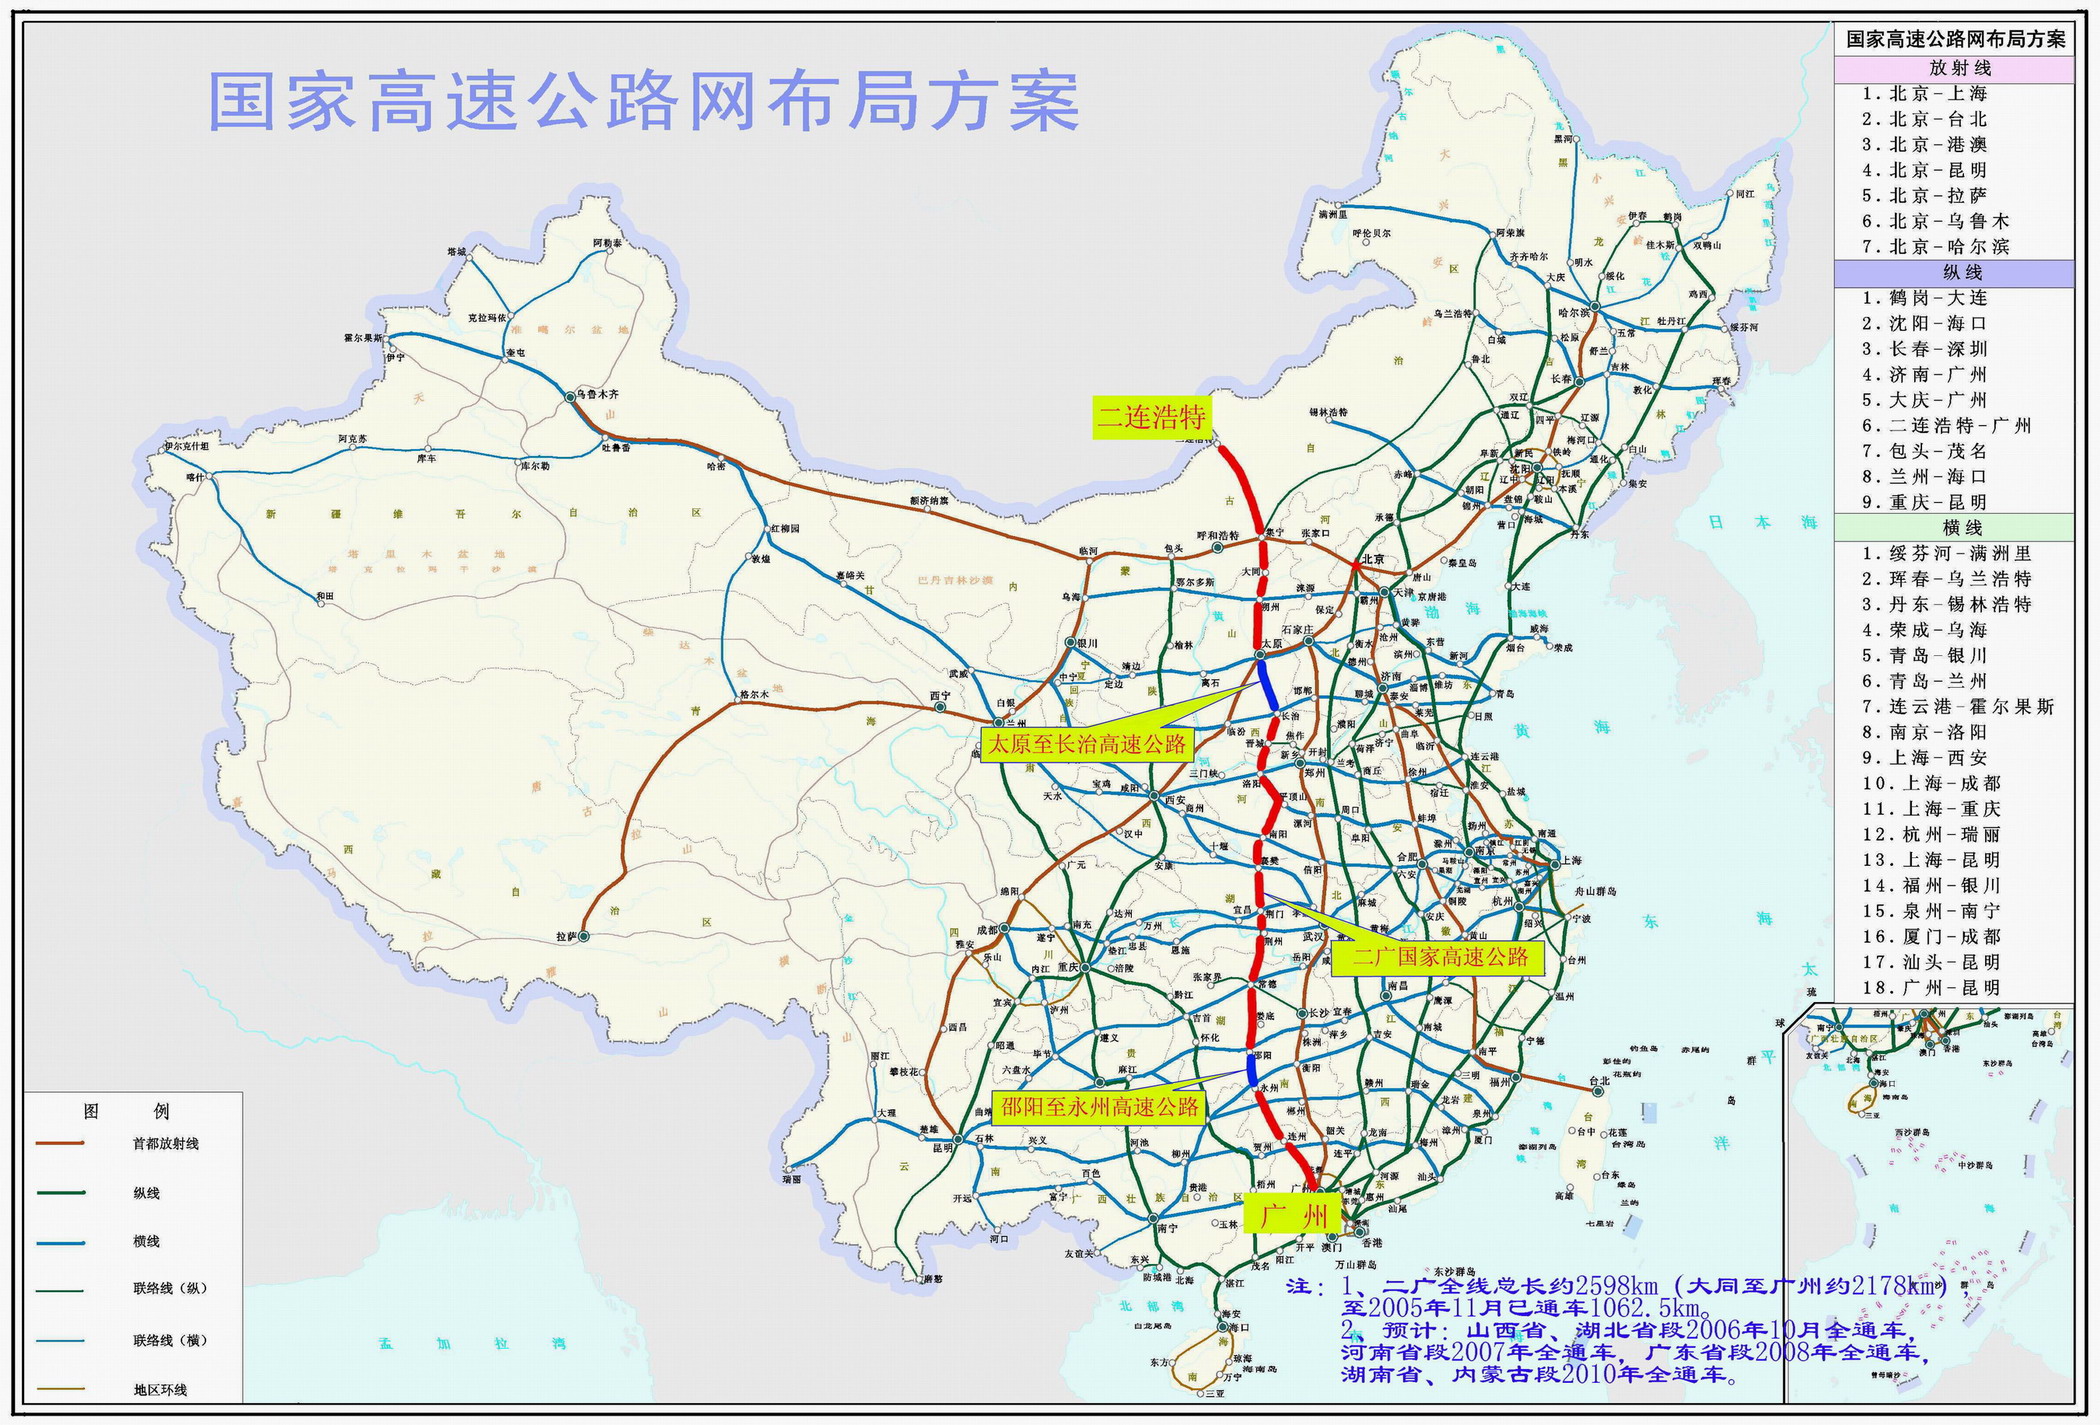 二广高速广东段路面工程完工 本月底通车在望图片